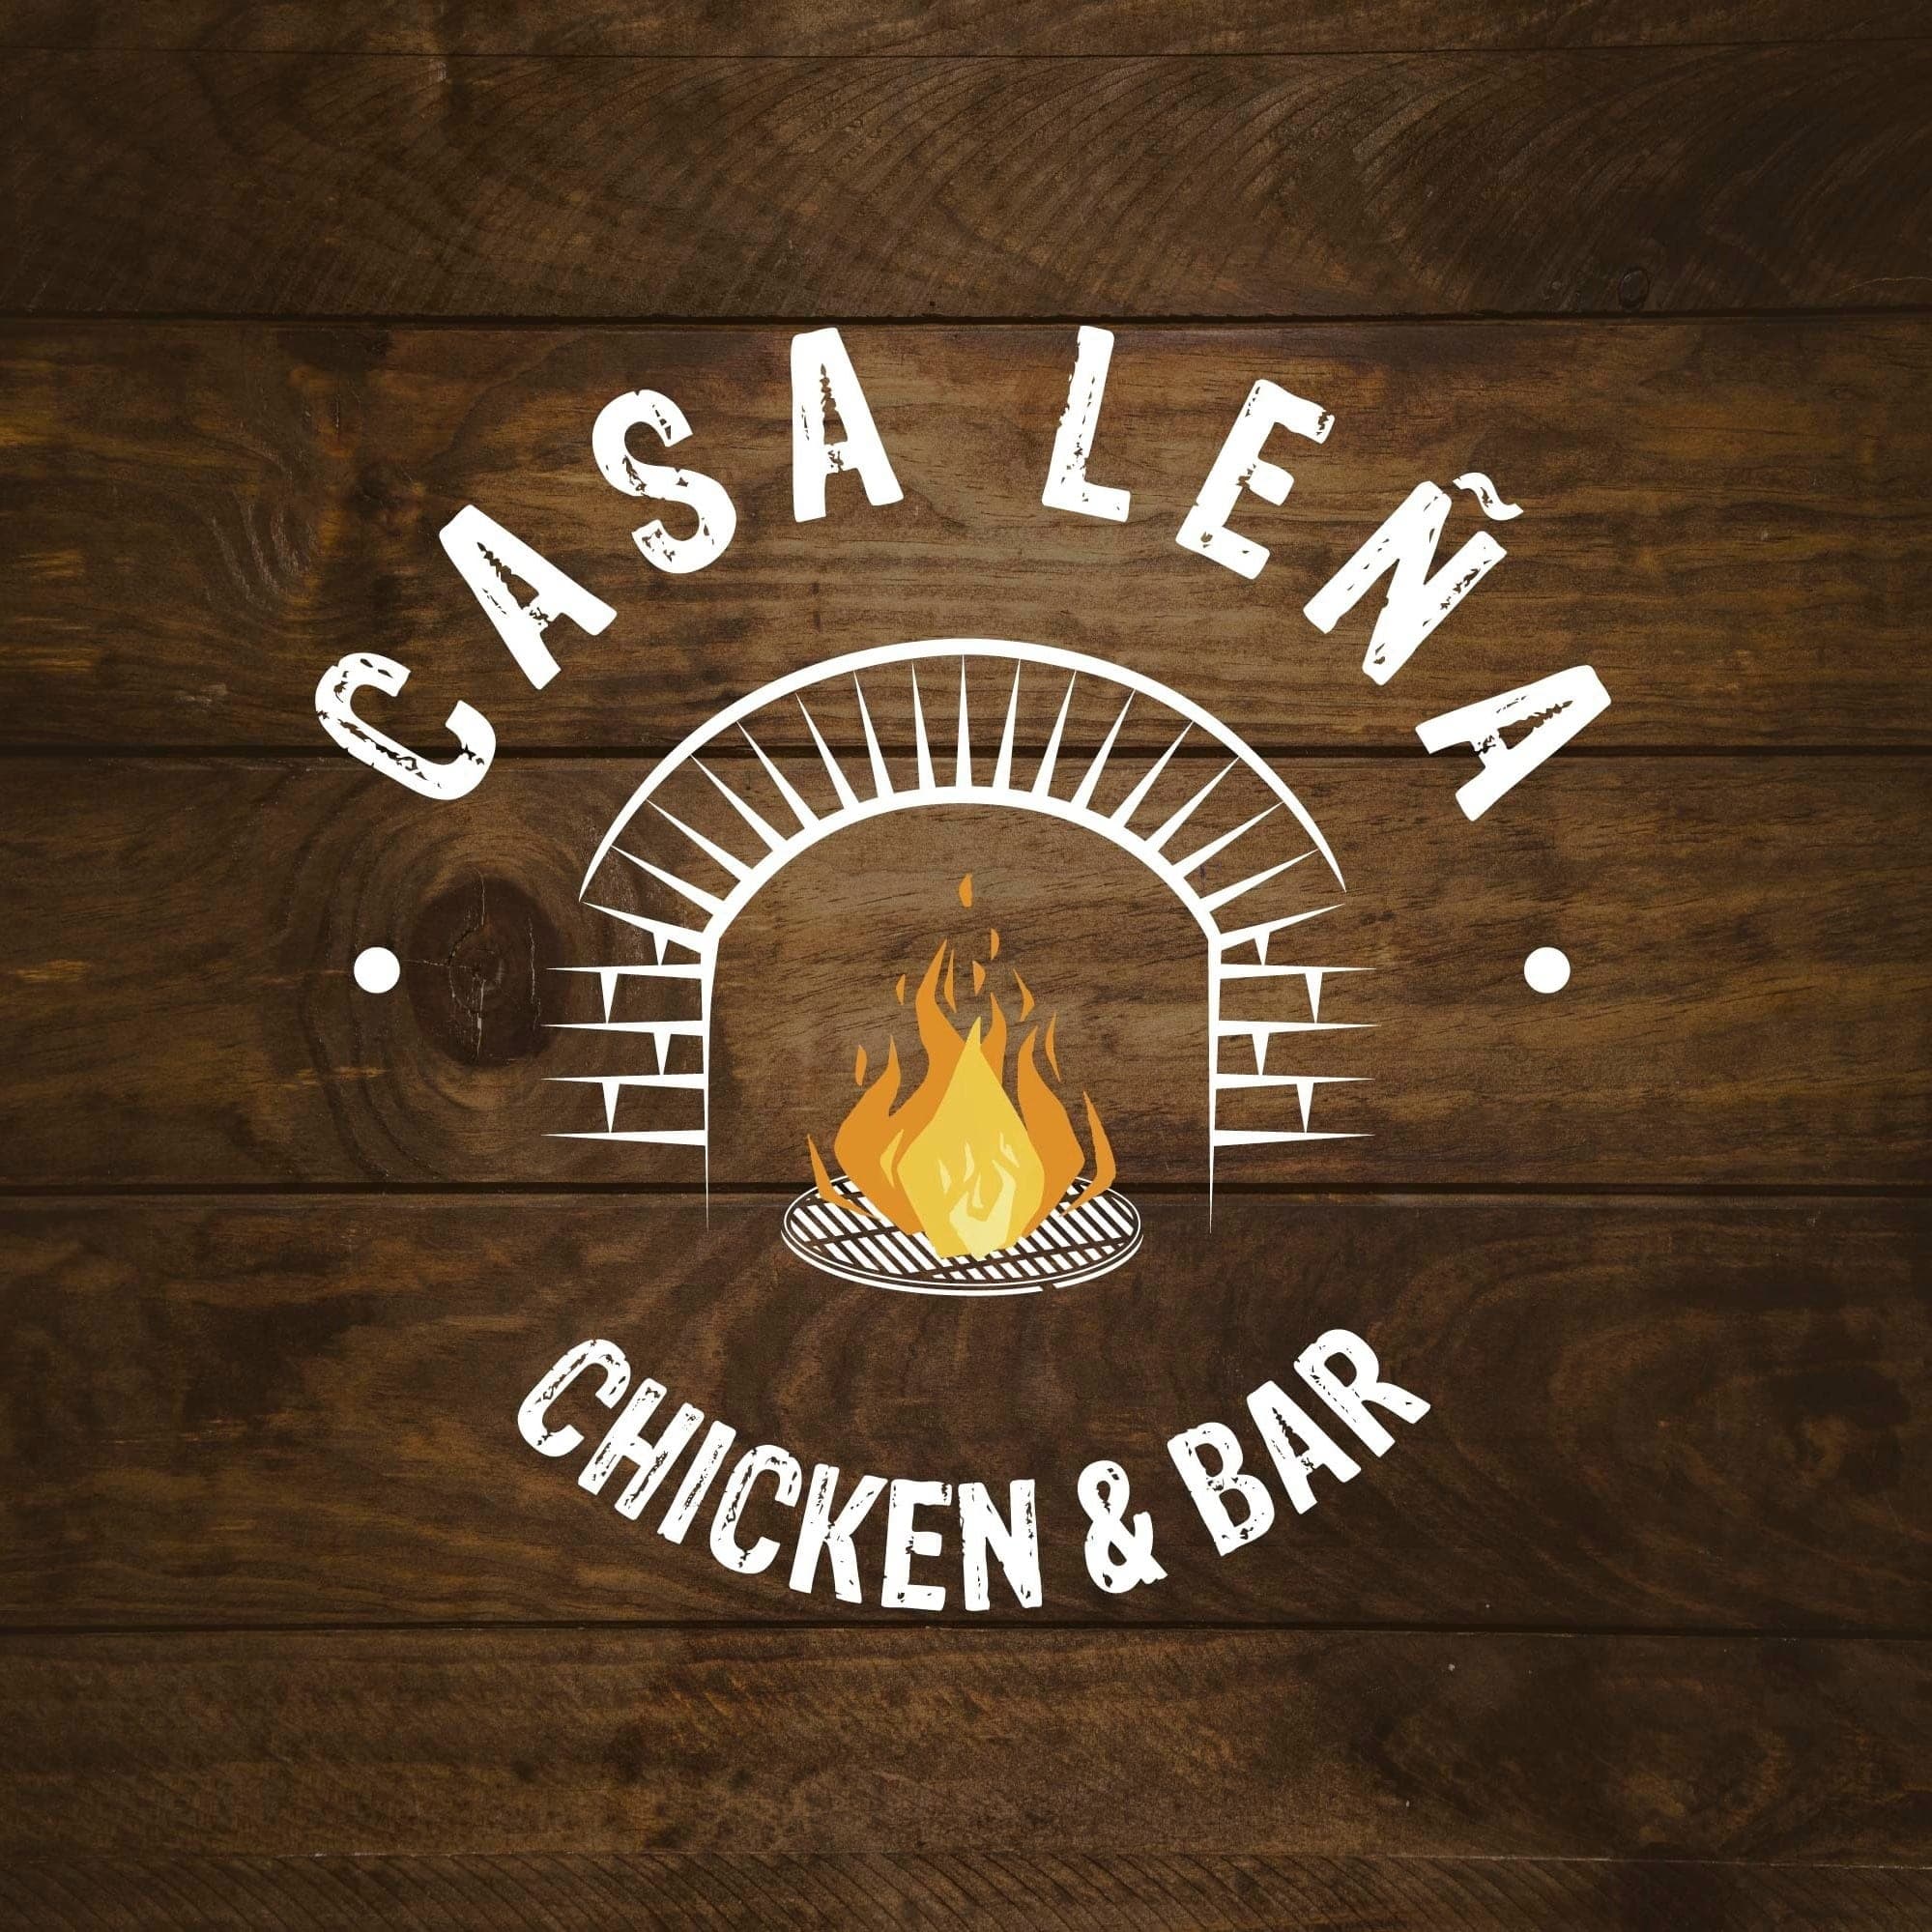 Casa Leña Chicken